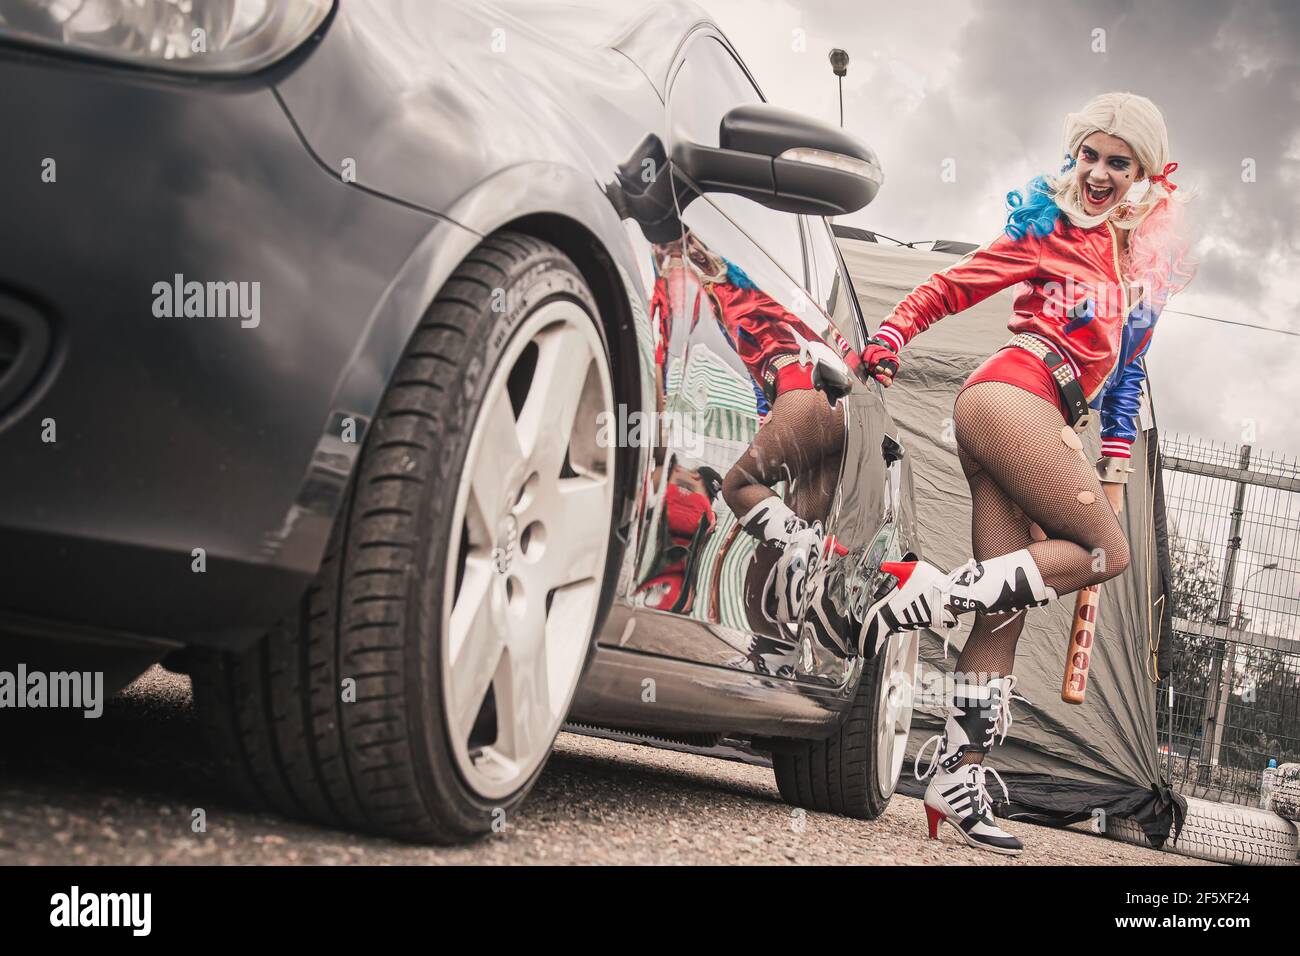 Mosca, Russia - 06 luglio 2020: Harley Quinn colpisce una macchina nera  parcheggiata con una mazza da baseball. C'è un'ammaccatura nella vettura,  la vettura è danneggiata. Cosplay, ragazza vestita come costume di